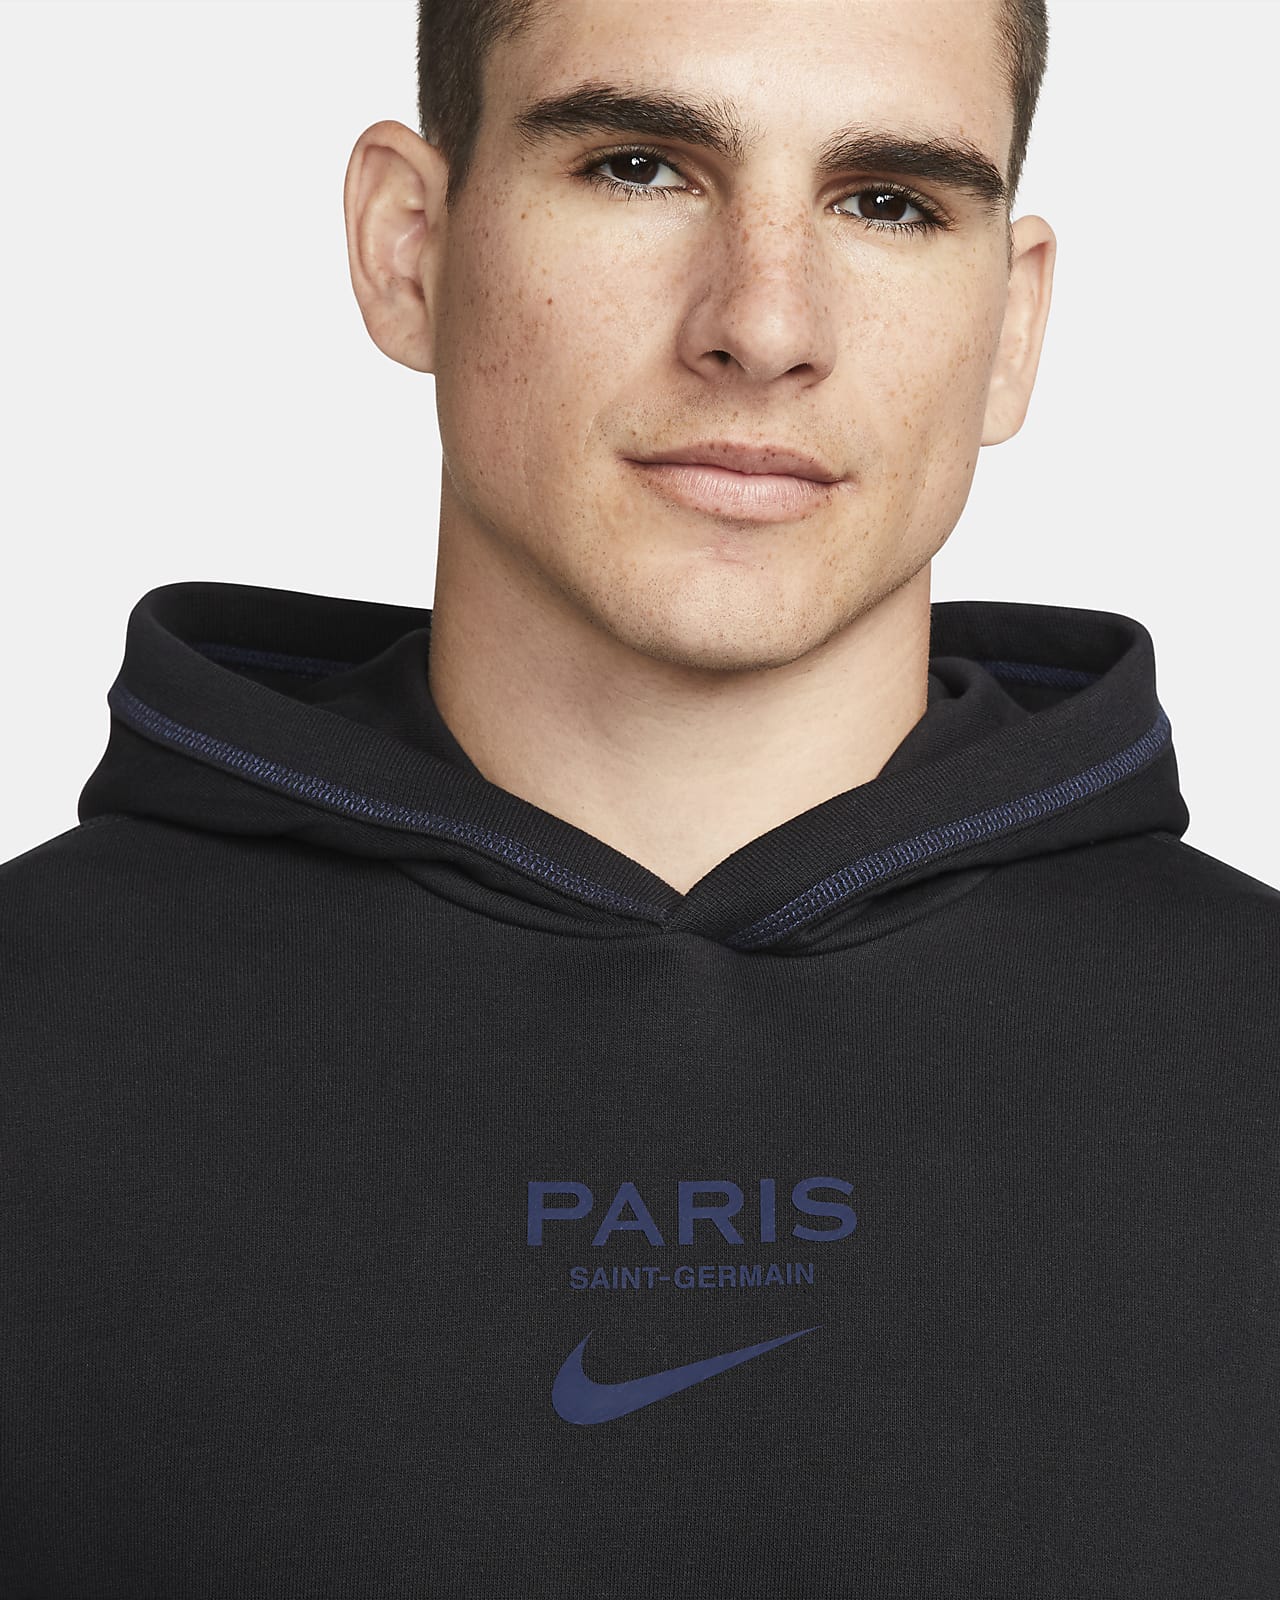 Boom Monopoly Klem Paris Saint-Germain Men's Football Hoodie. Nike LU